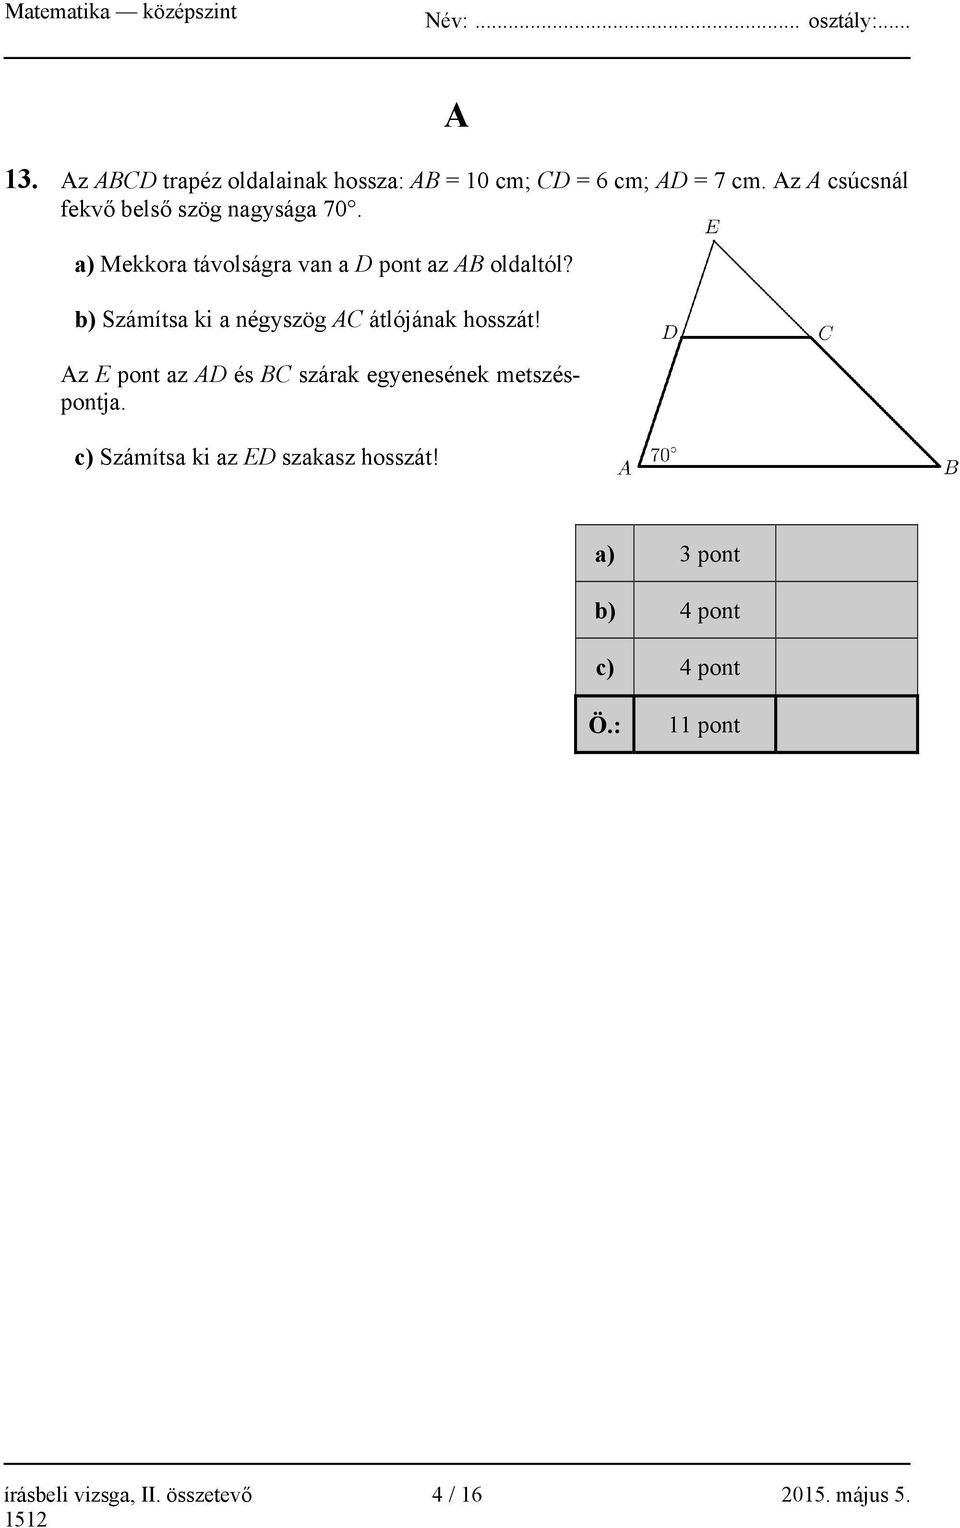 b) Számítsa ki a négyszög AC átlójának hosszát!